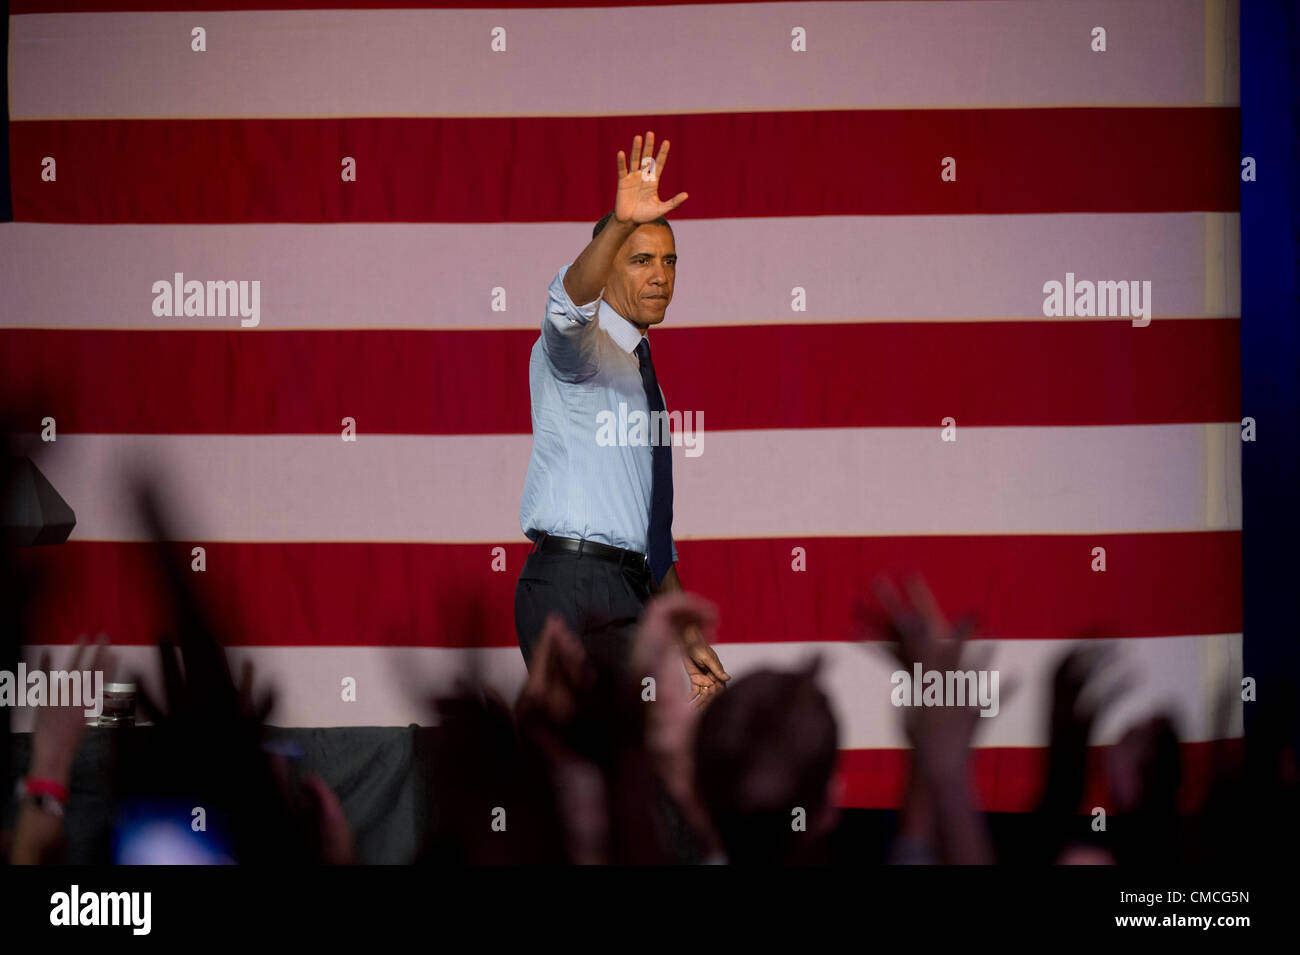 US-Präsident Barack Obama macht eine Texas-Kampagne Dienstag Nacht in Austin Music Hall während der Kampagne 2012 zu stoppen Stockfoto